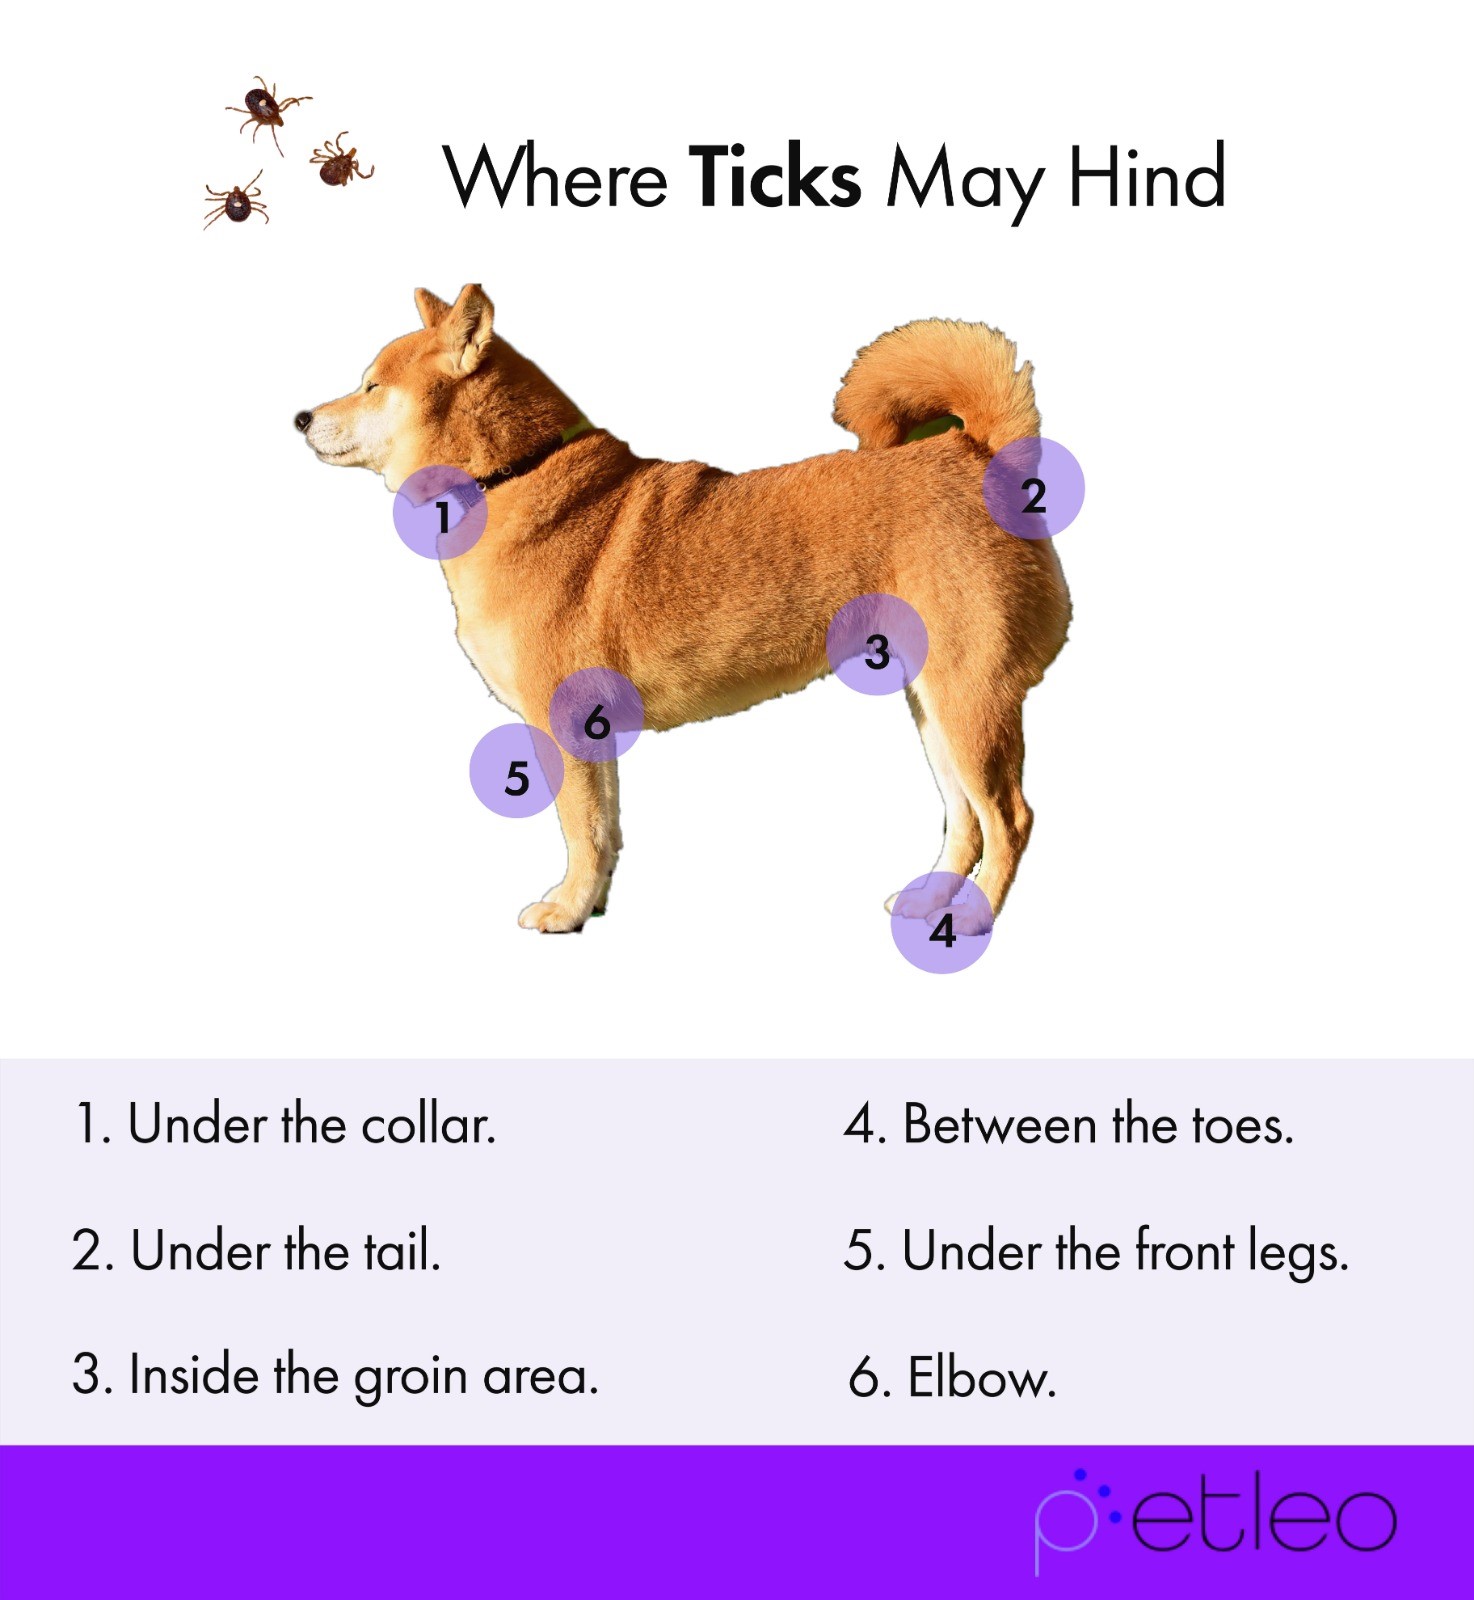 Common tick spots